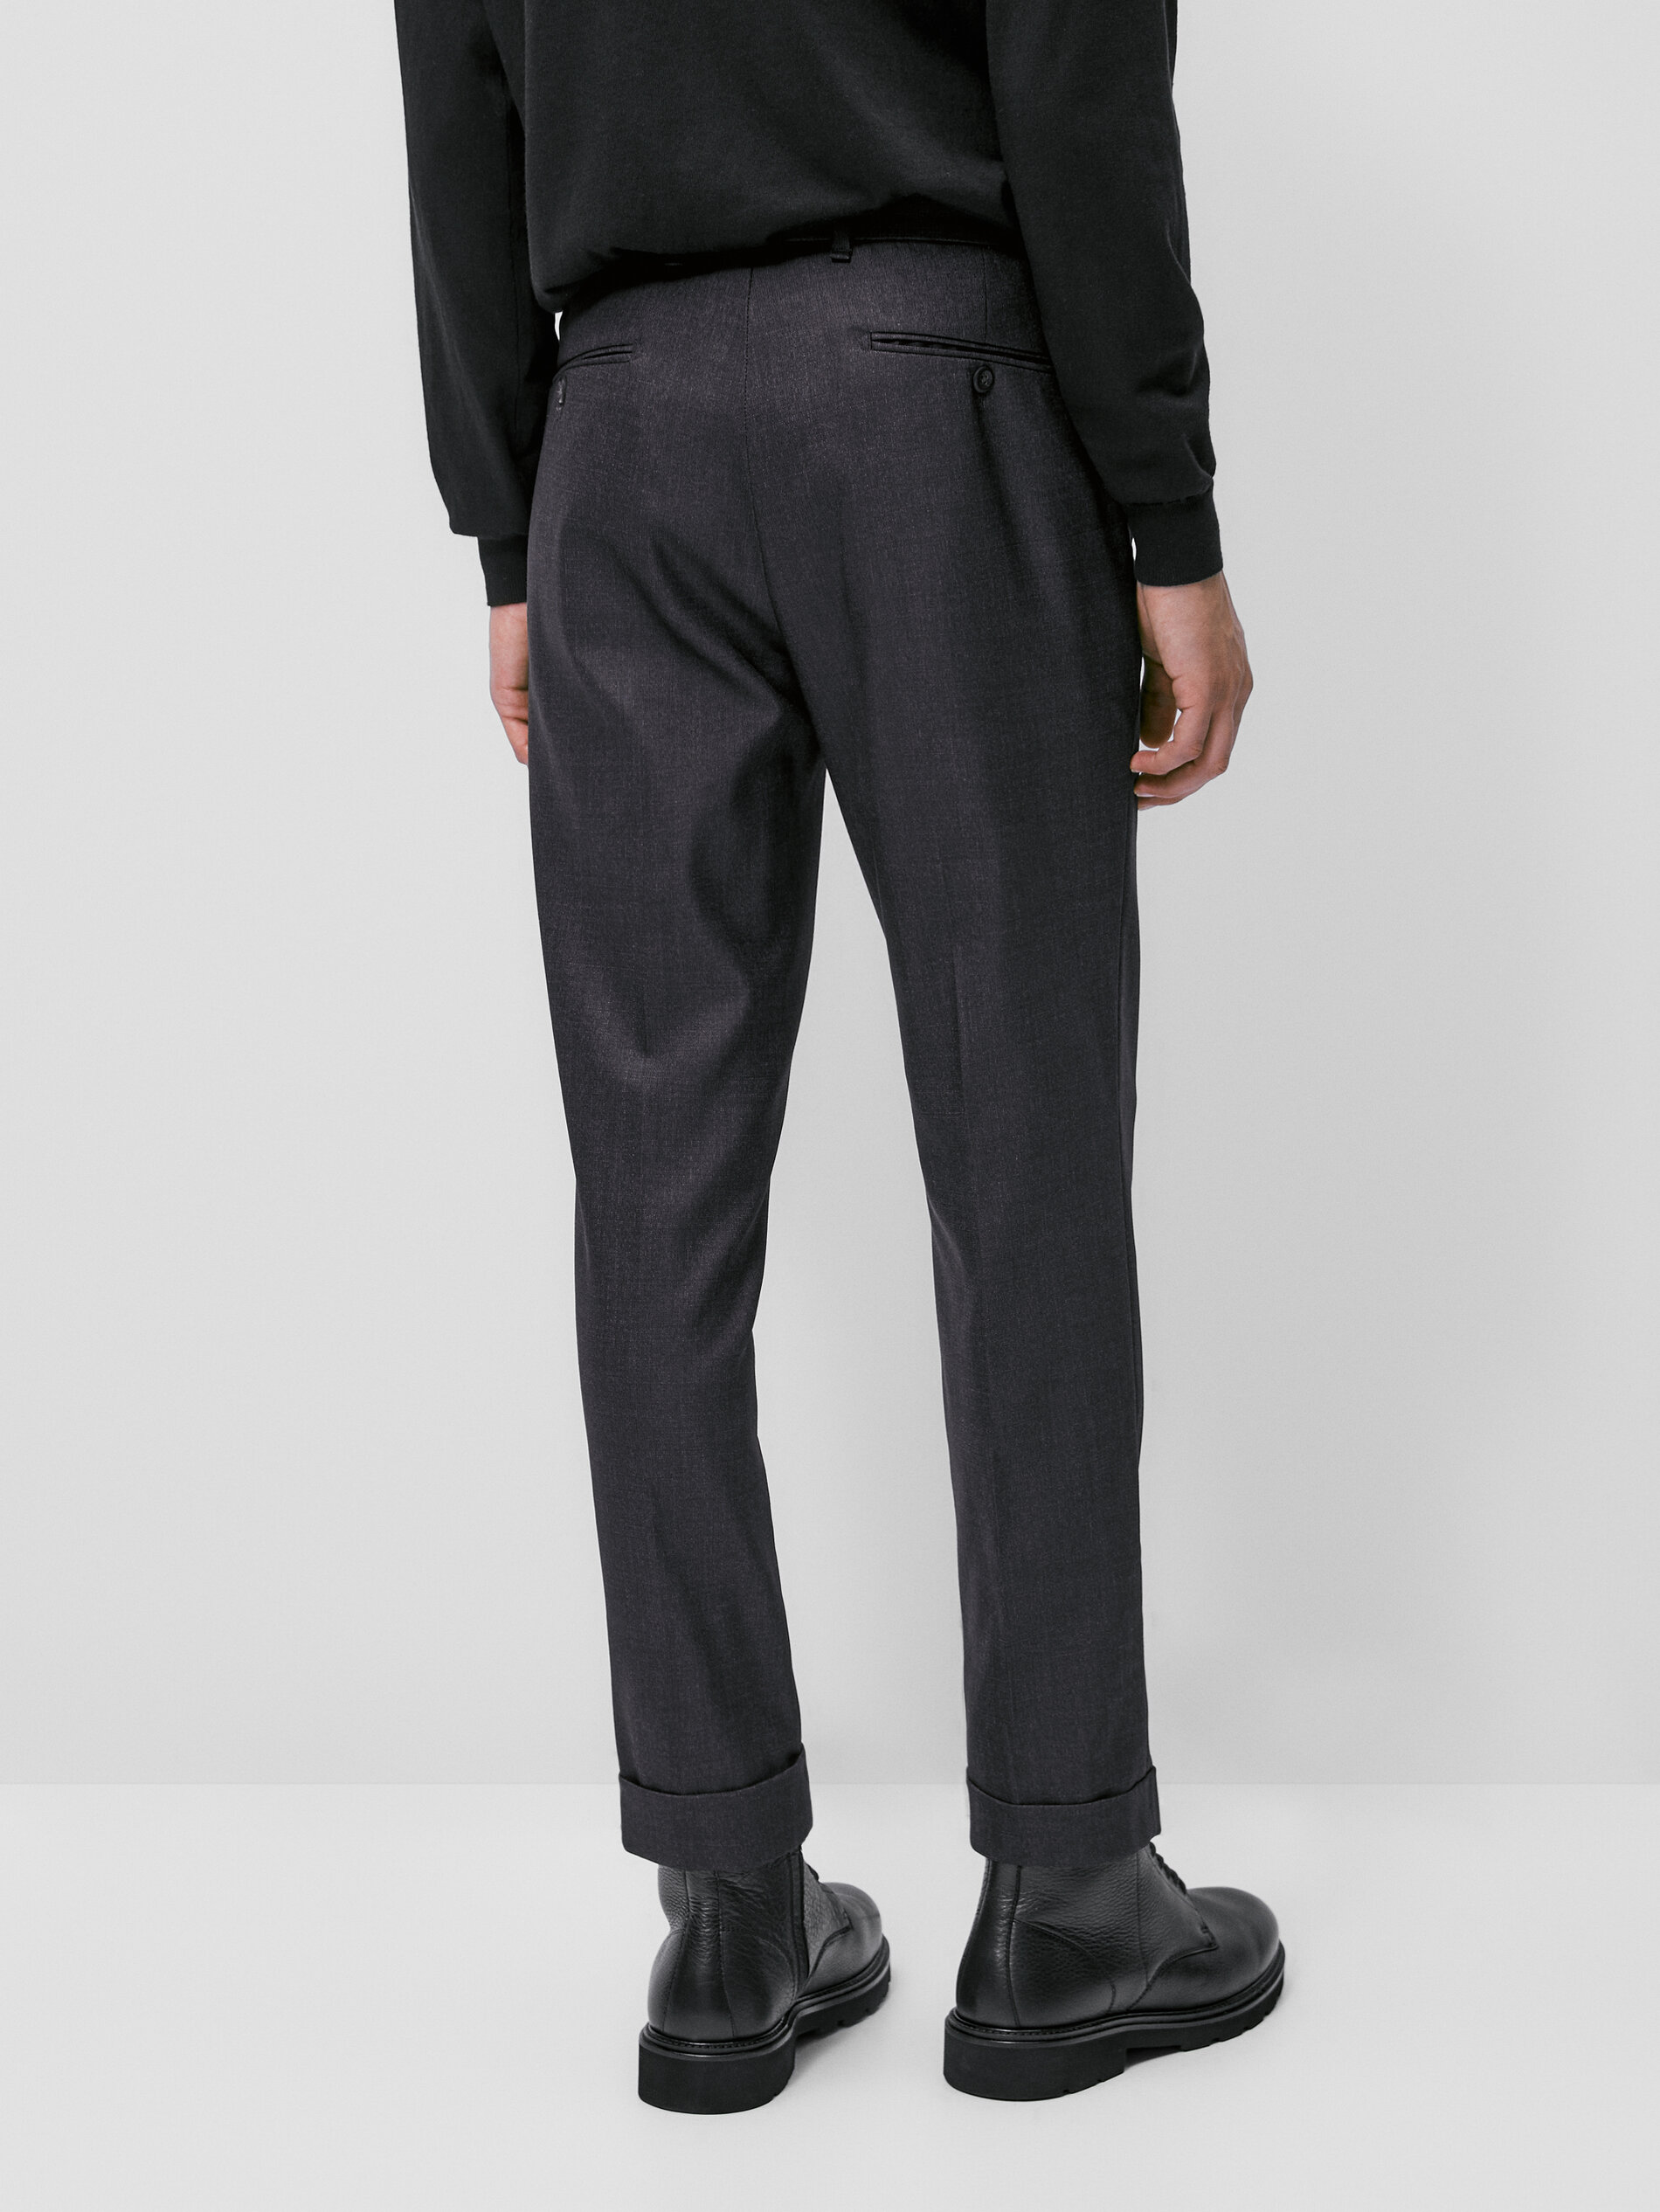 discount 99% Navy Blue 48                  EU MEN FASHION Suits & Sets Elegant Massimo Dutti Suit trousers 